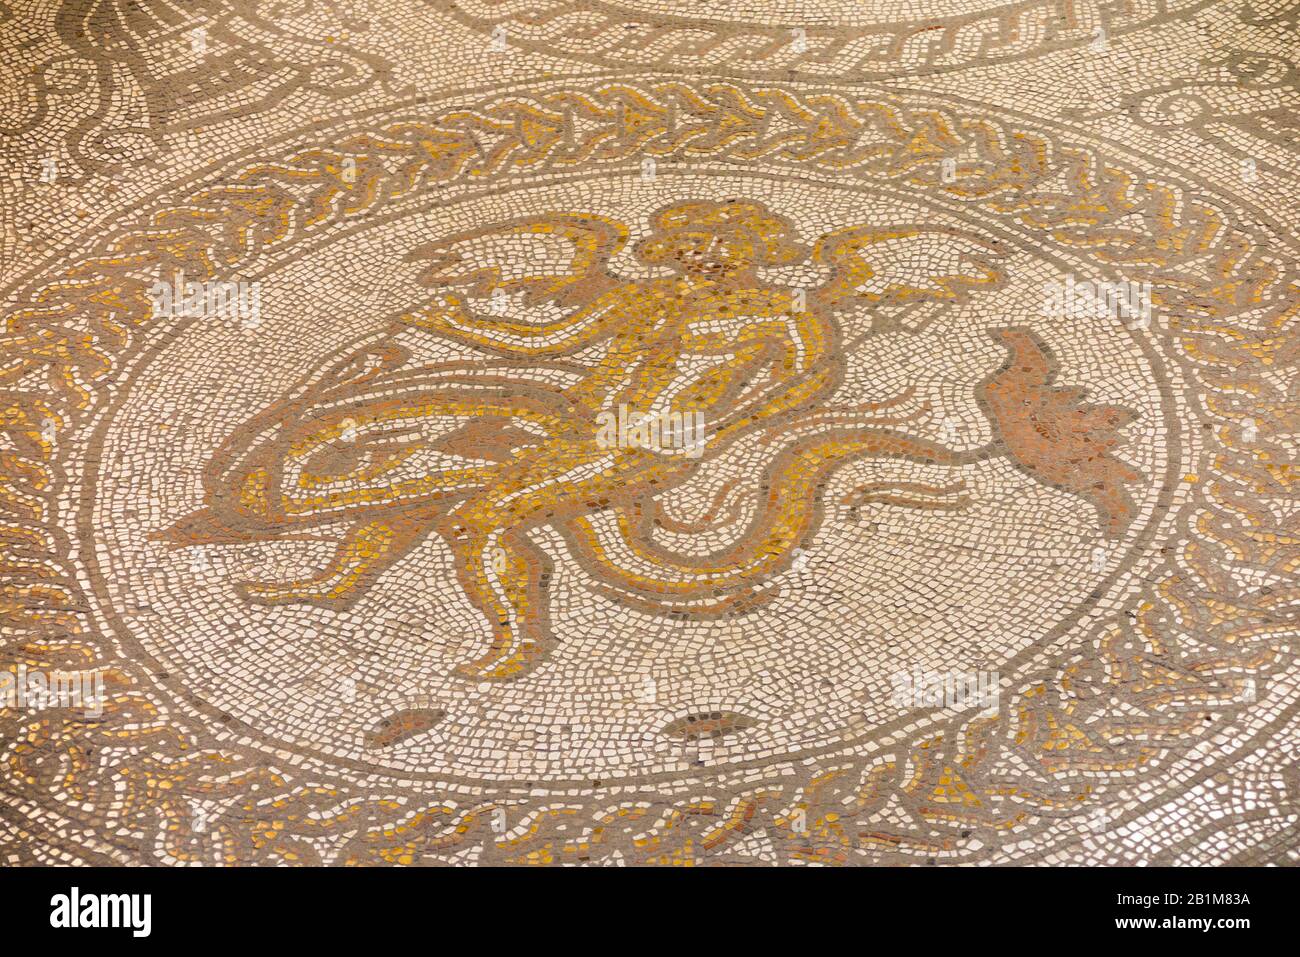 Cupid et une mosaïque de dauphins / mosaïques en parfait état, dans une villa romaine. Palais Romain De Fishbourne. Fishbourne, Chichester, West Sussex. ROYAUME-UNI (114) Banque D'Images